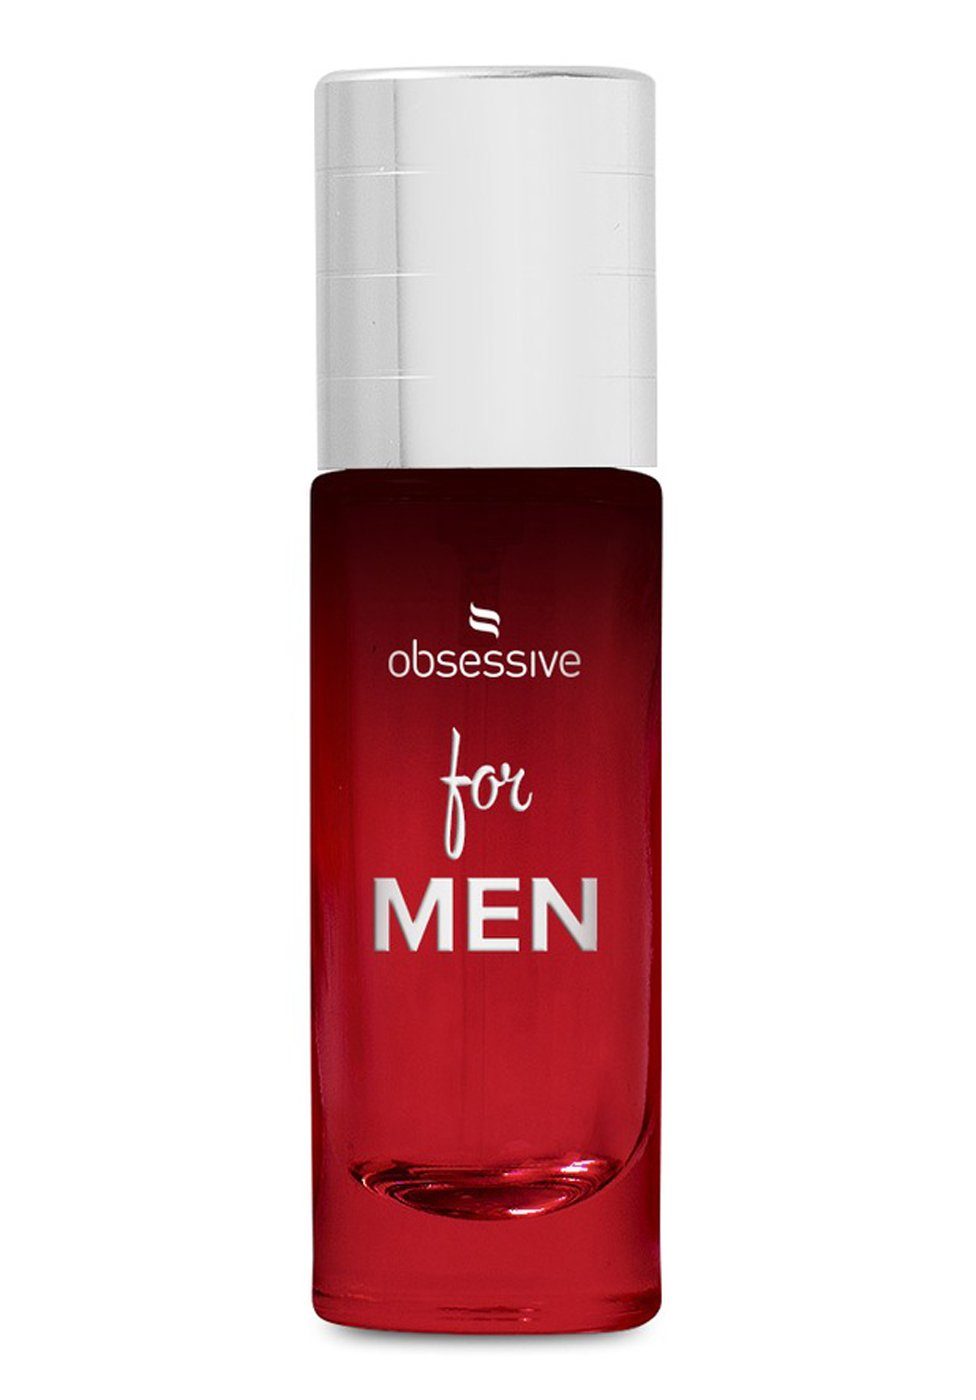 Obsessive Körperspray Parfum mit Mann für den Pheromonen